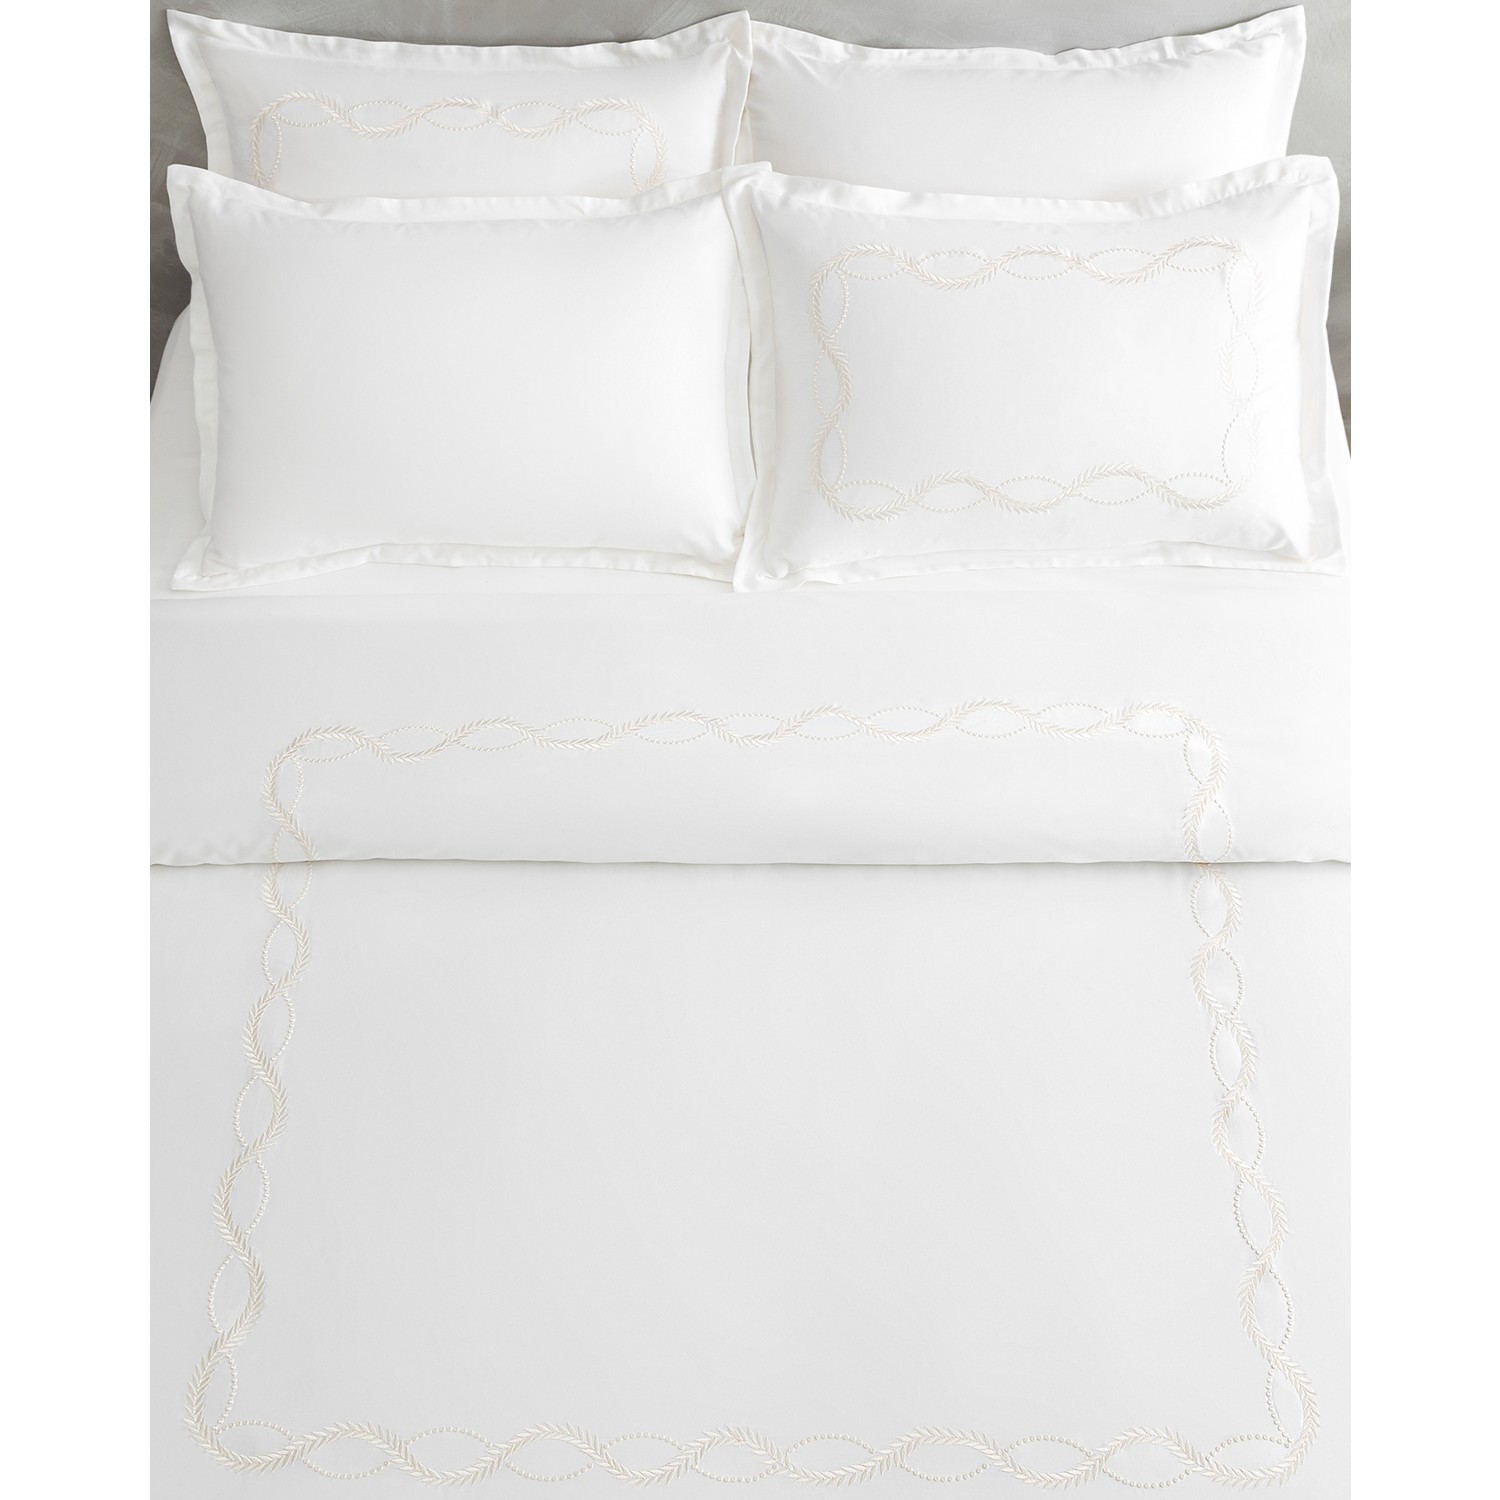 Комплект постельного белья с двойной вышивкой Madame Coco Marguerite - атлас